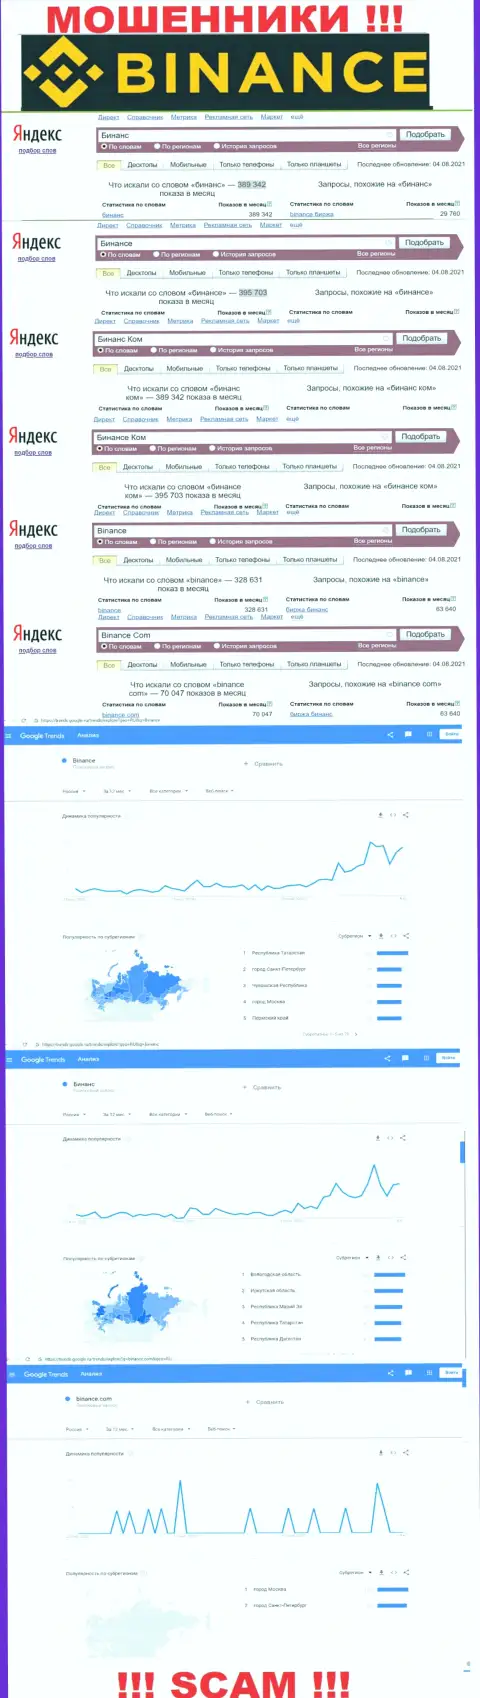 Статистические показатели о запросах в поисковиках глобальной internet сети данных о организации Binance